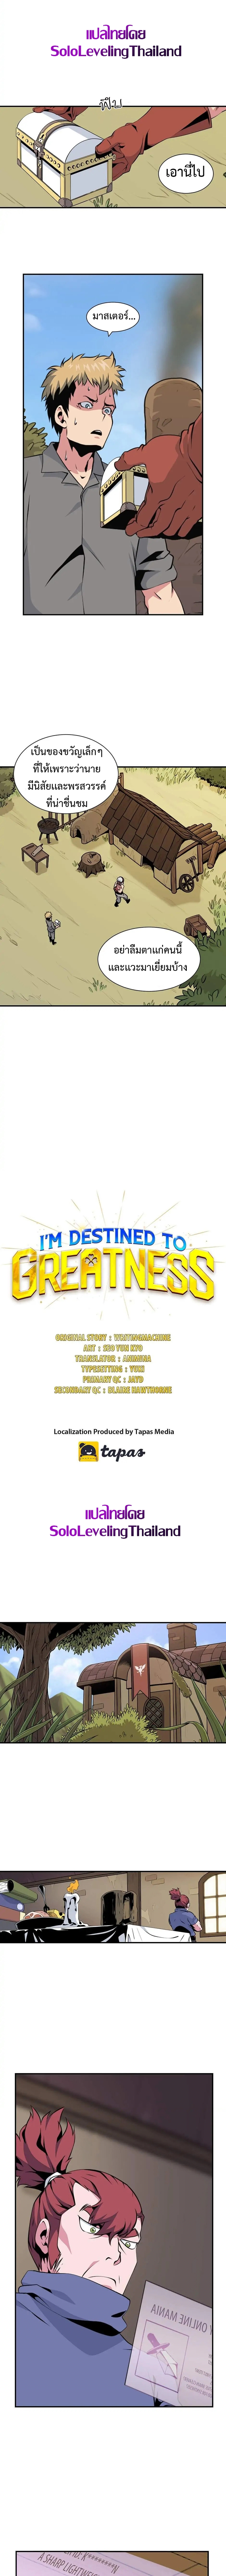 Iโ€m Destined For Greatness 10 (2)